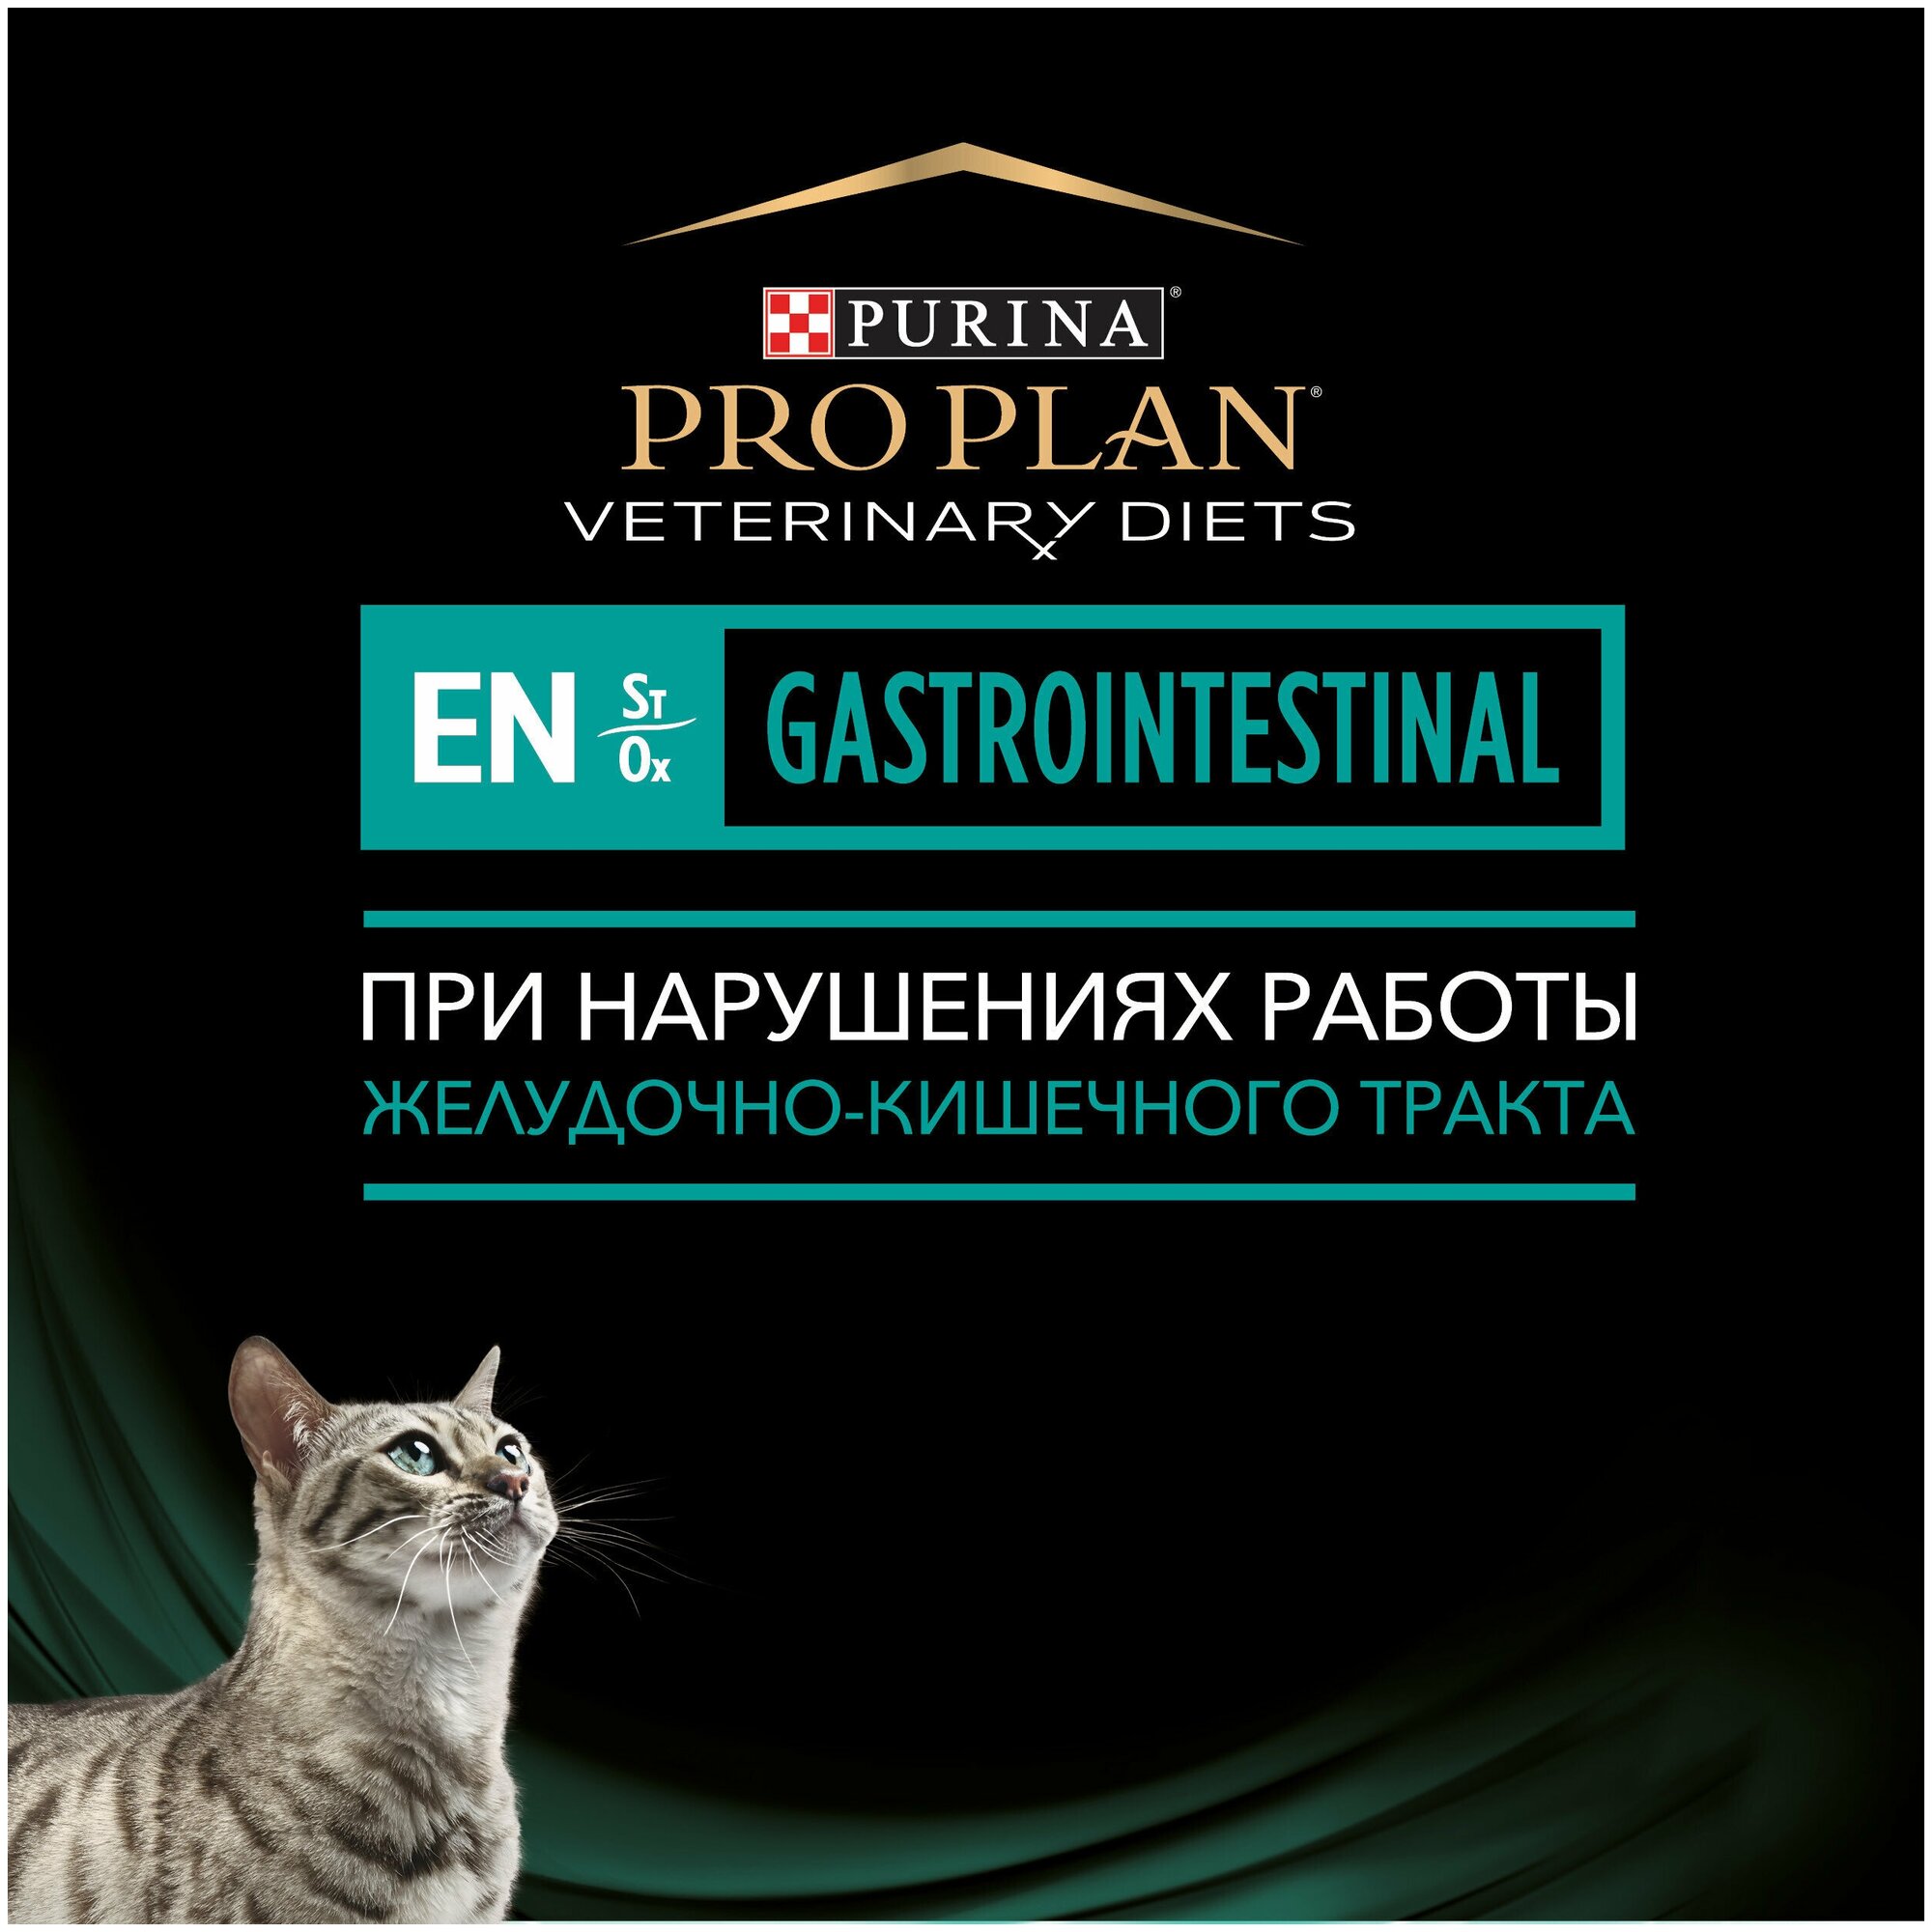 Влажный корм для кошек диетический PRO PLAN VETERINARY DIETS EN ST/OX Gastrointestinal при расстройствах пищеварения, с лососем, в соусе, 85 г х 10 шт - фотография № 3